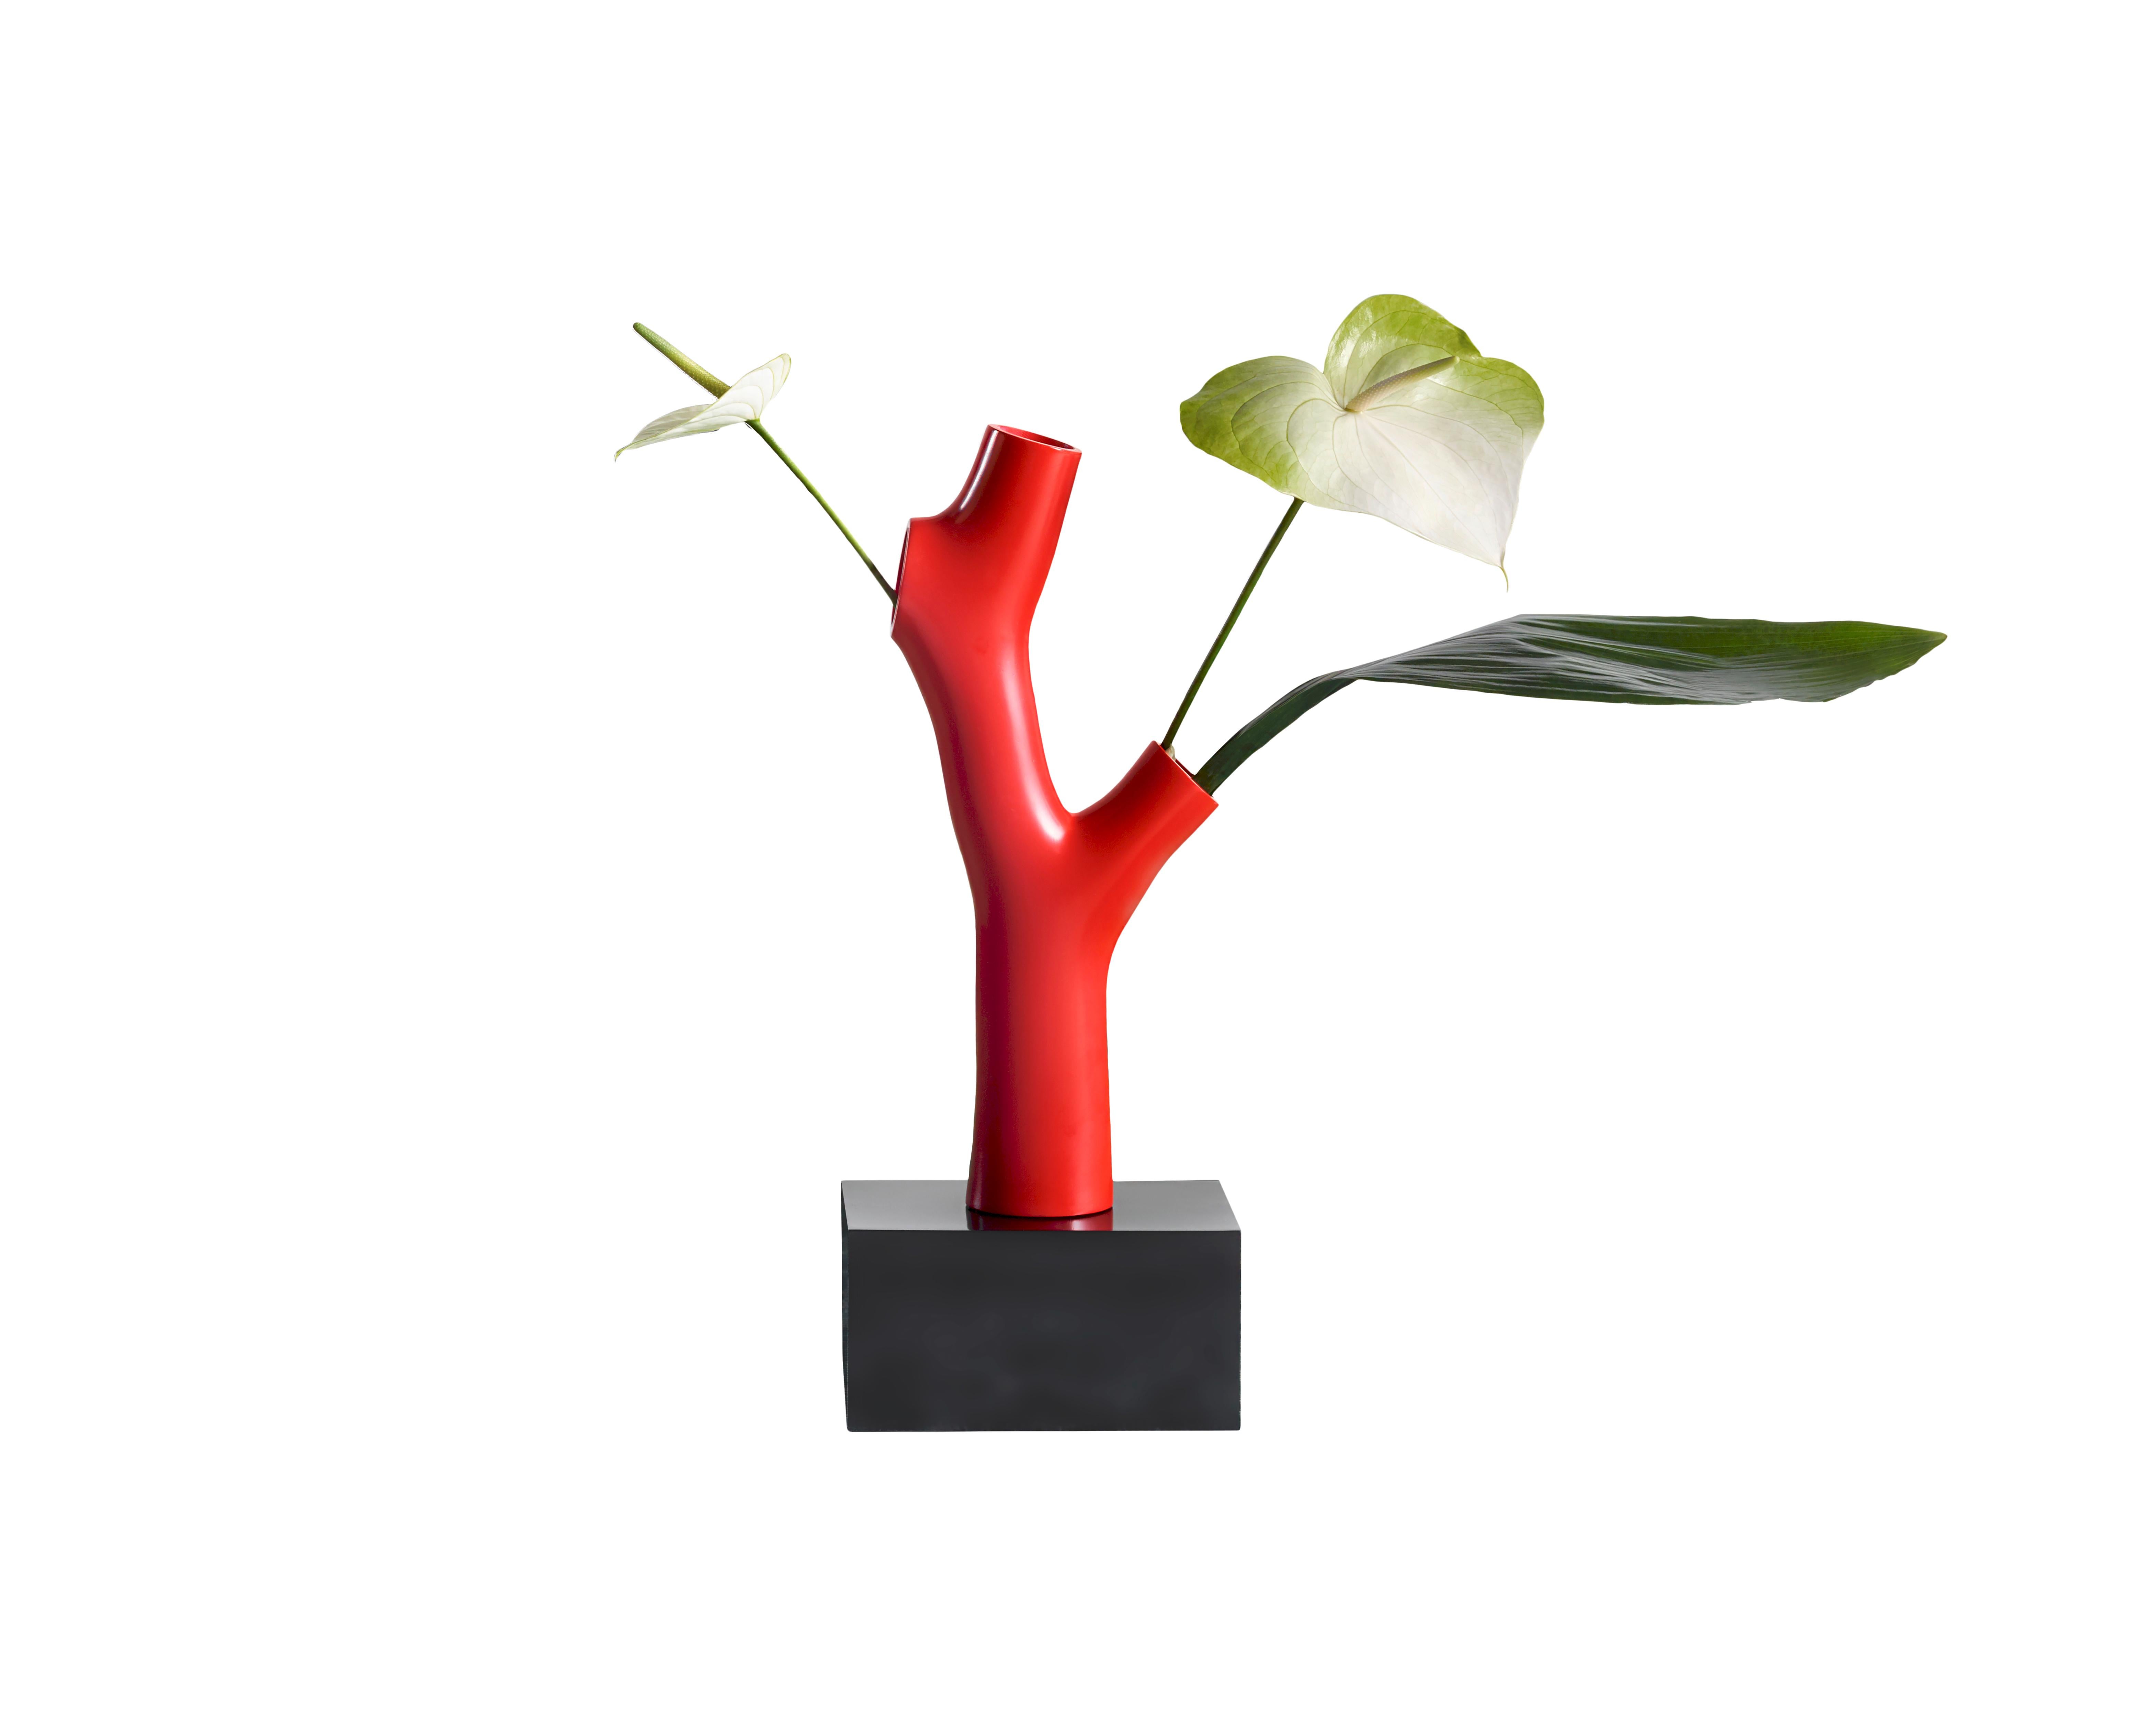 Eine Vase mit der Struktur und Form einer Koralle, die fest auf ihrem Sockel verankert ist, in die man Blumen stellen kann, die aber auch wie eine Skulptur wirken kann. Andrea Branzi stellt das Konzept der Kollektion auf den Kopf, die innerhalb